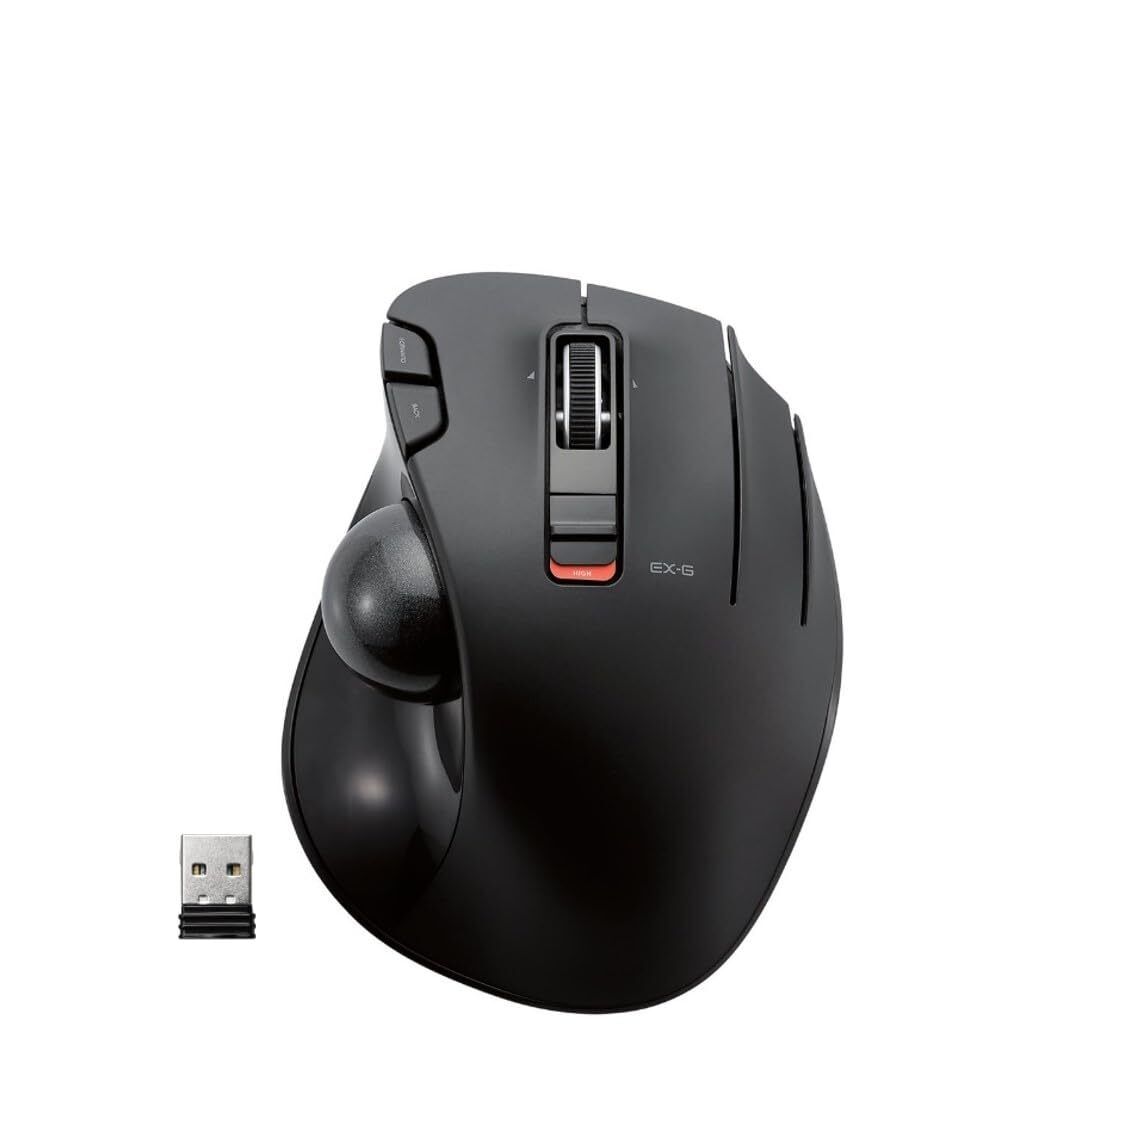 ELECOM EX-G Trackball Mouse 2.4GHz Wireless Thumb Control Sculpted Ergonom...